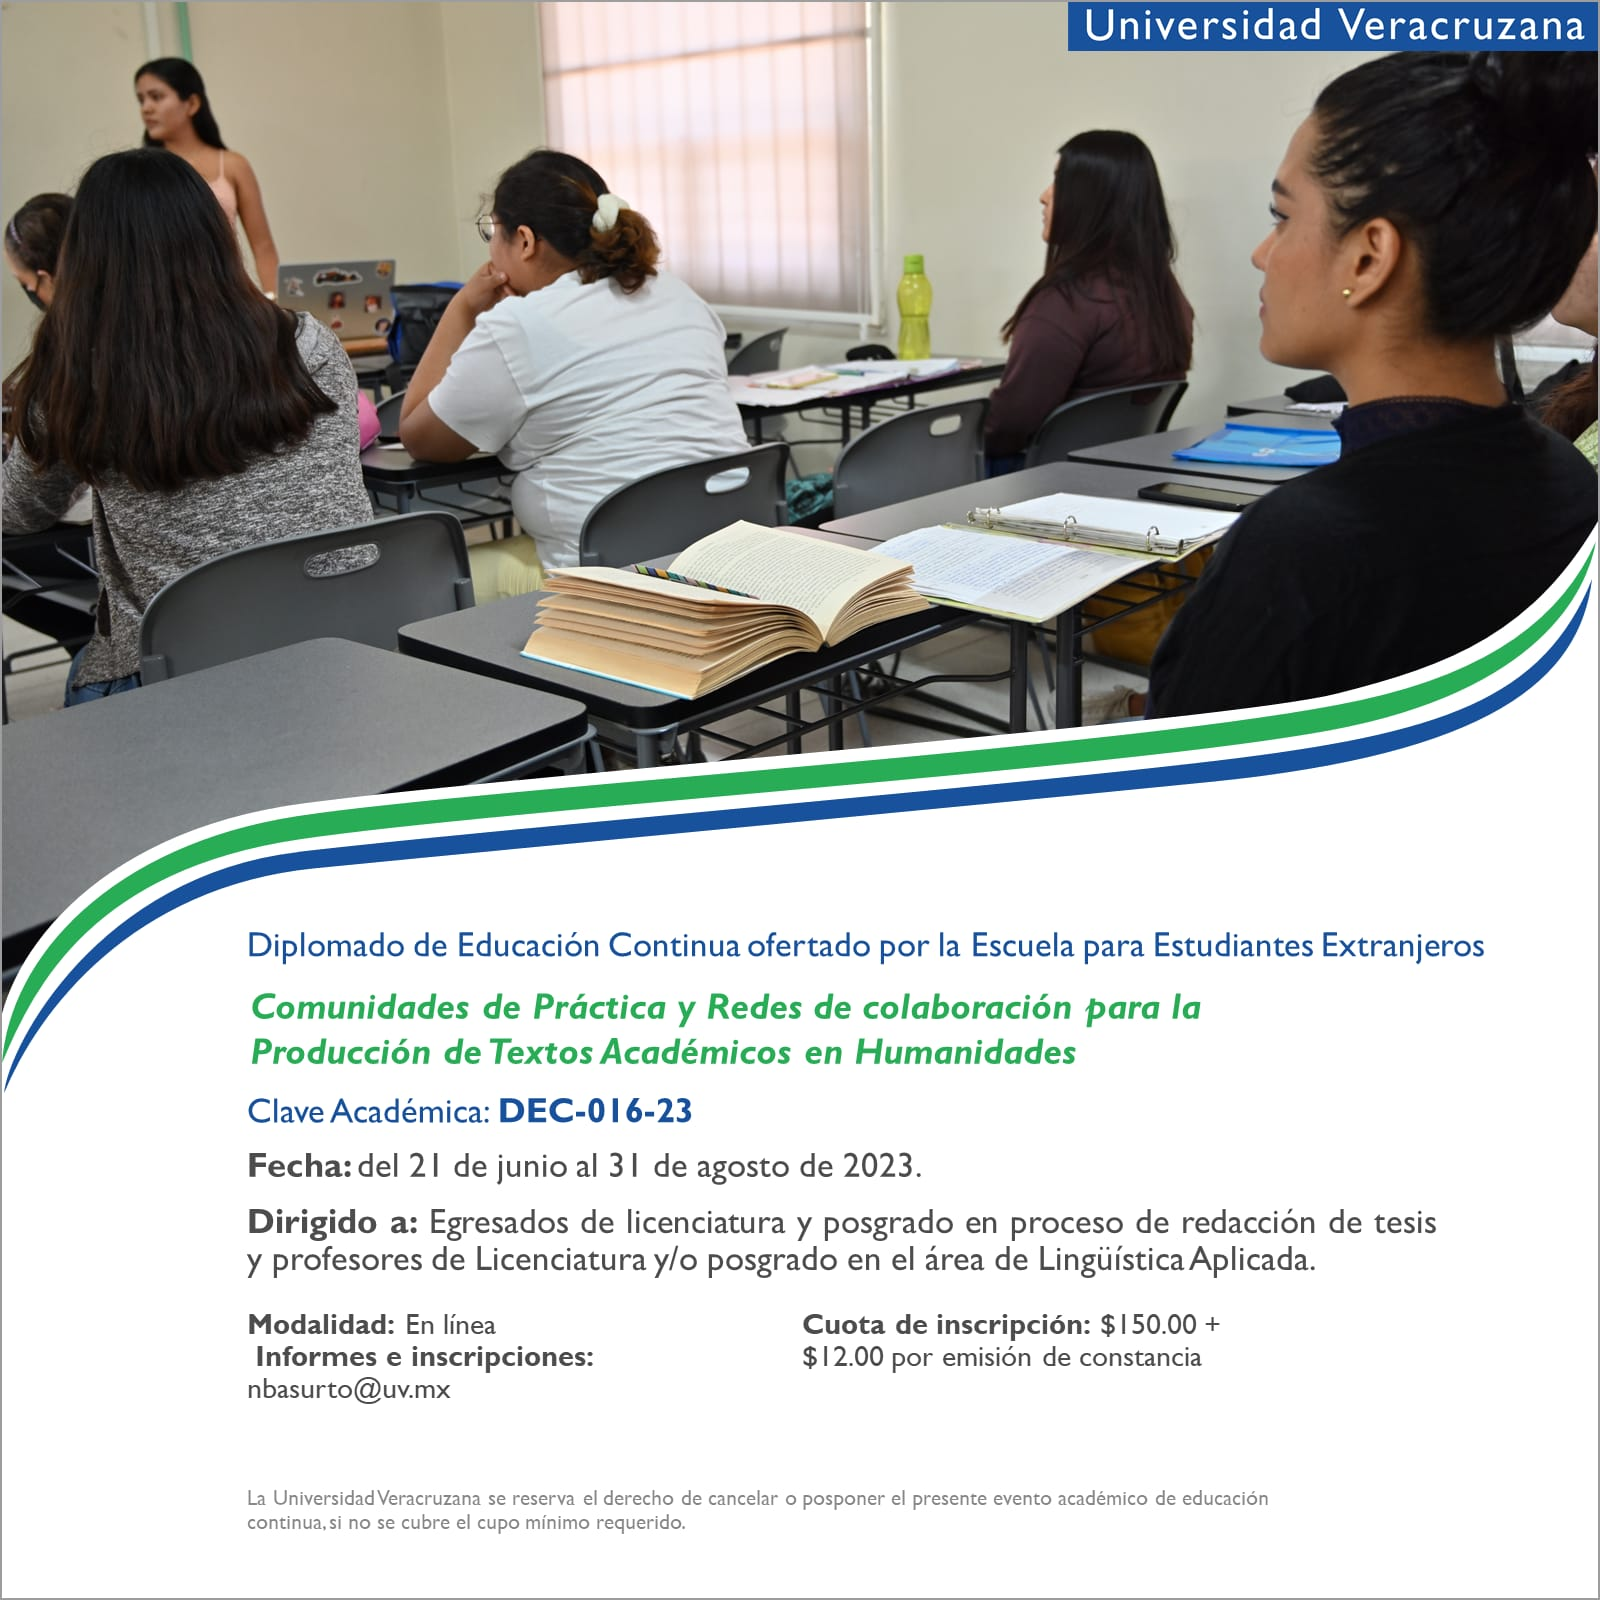 Diplomado: Comunidades de Práctica y Redes de colaboración para la Producción de Textos Académicos en Humanidades